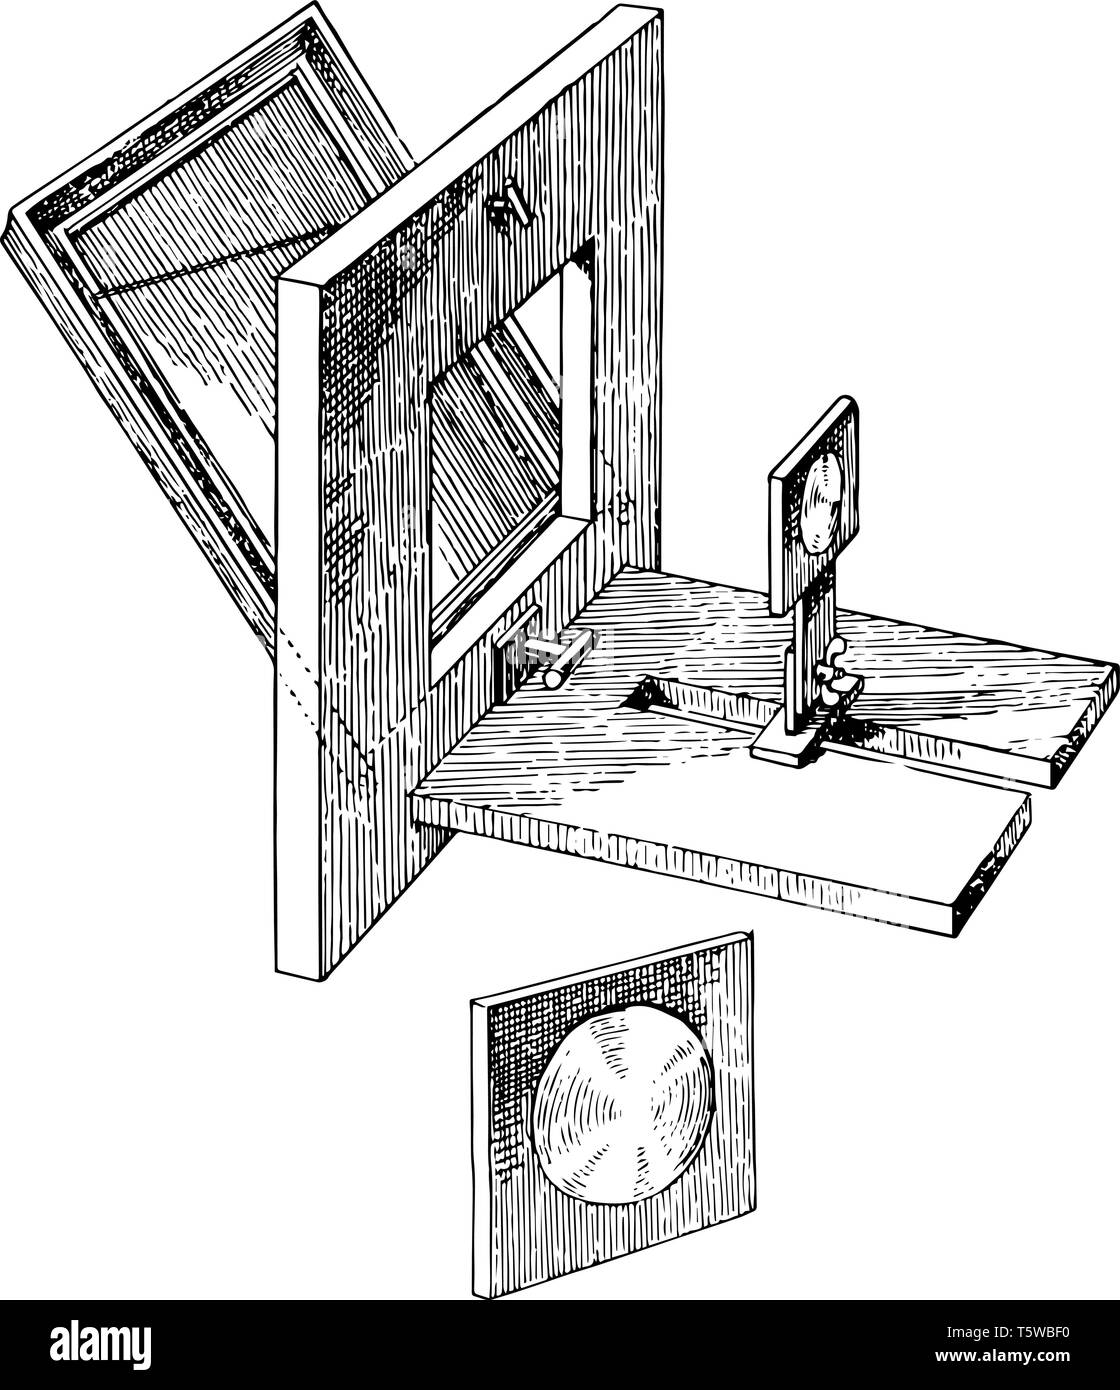 Una illustrazione di un heliostat o un dispositivo che segue il movimento del sole vintage disegno della linea di incisione o illustrazione. Illustrazione Vettoriale